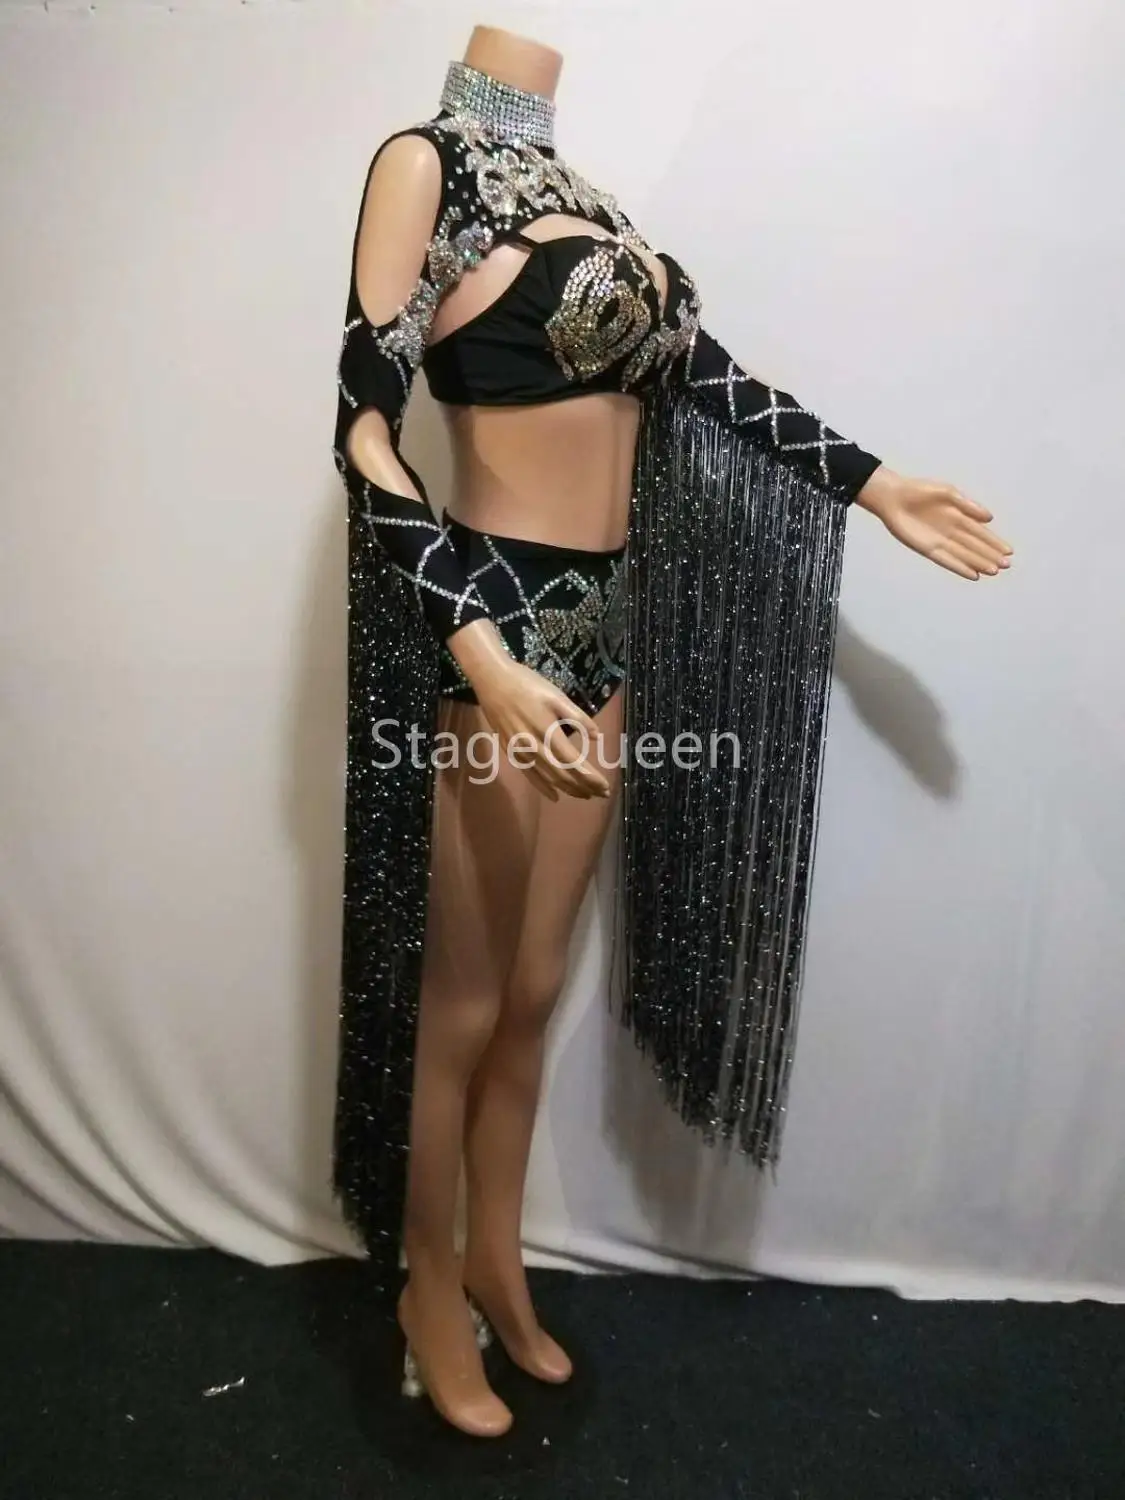 Сексуальная королева Роскошные Кристаллы черная кисточка танцевальная одежда яркий бюстгальтер со стразами короткая женская певица праздничное платье сценический костюм DS